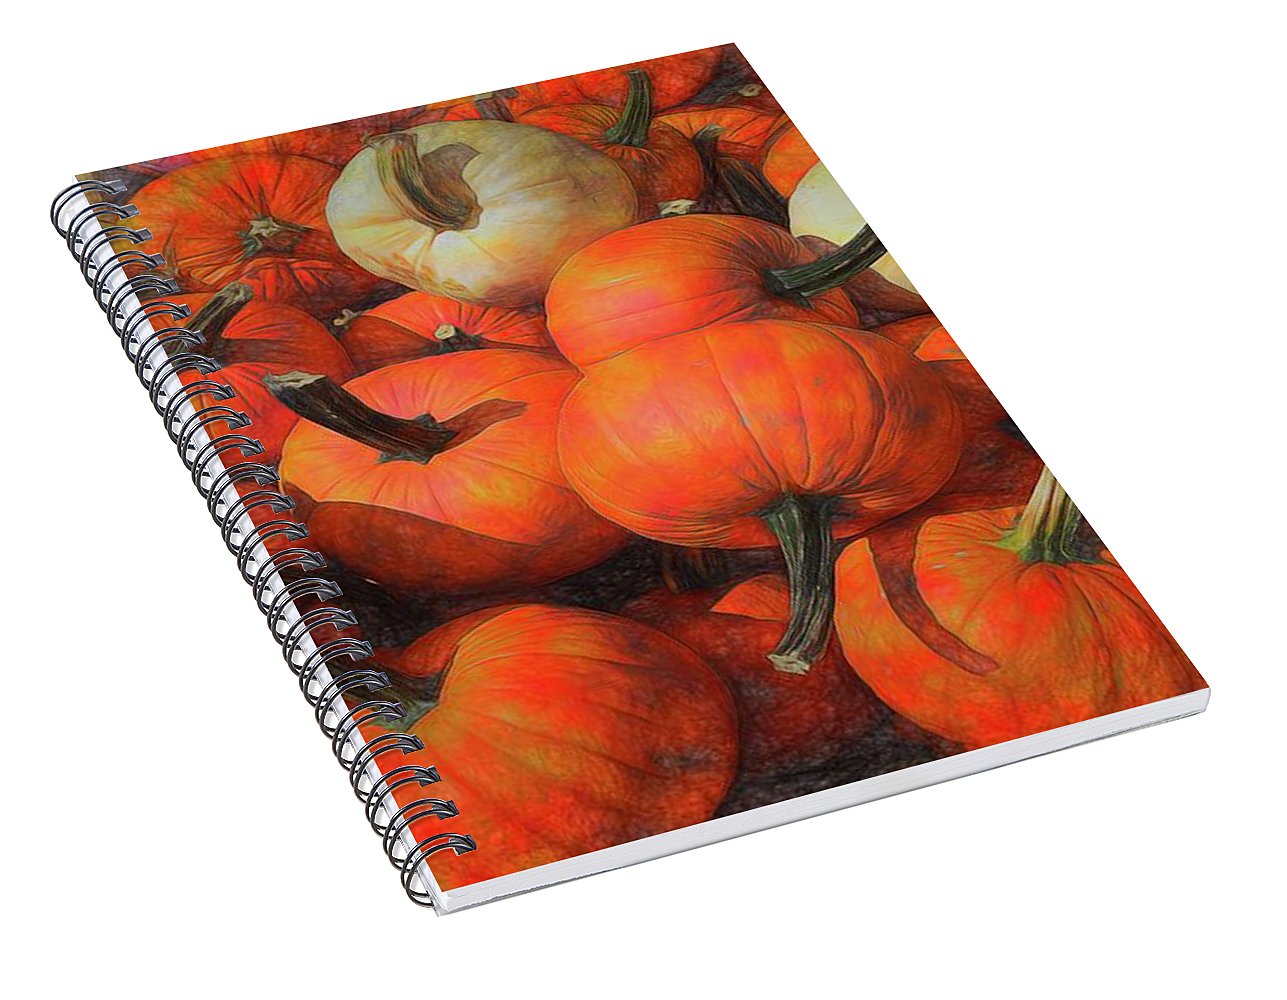 Fall Pumpkin Pile - Spiral Notebook